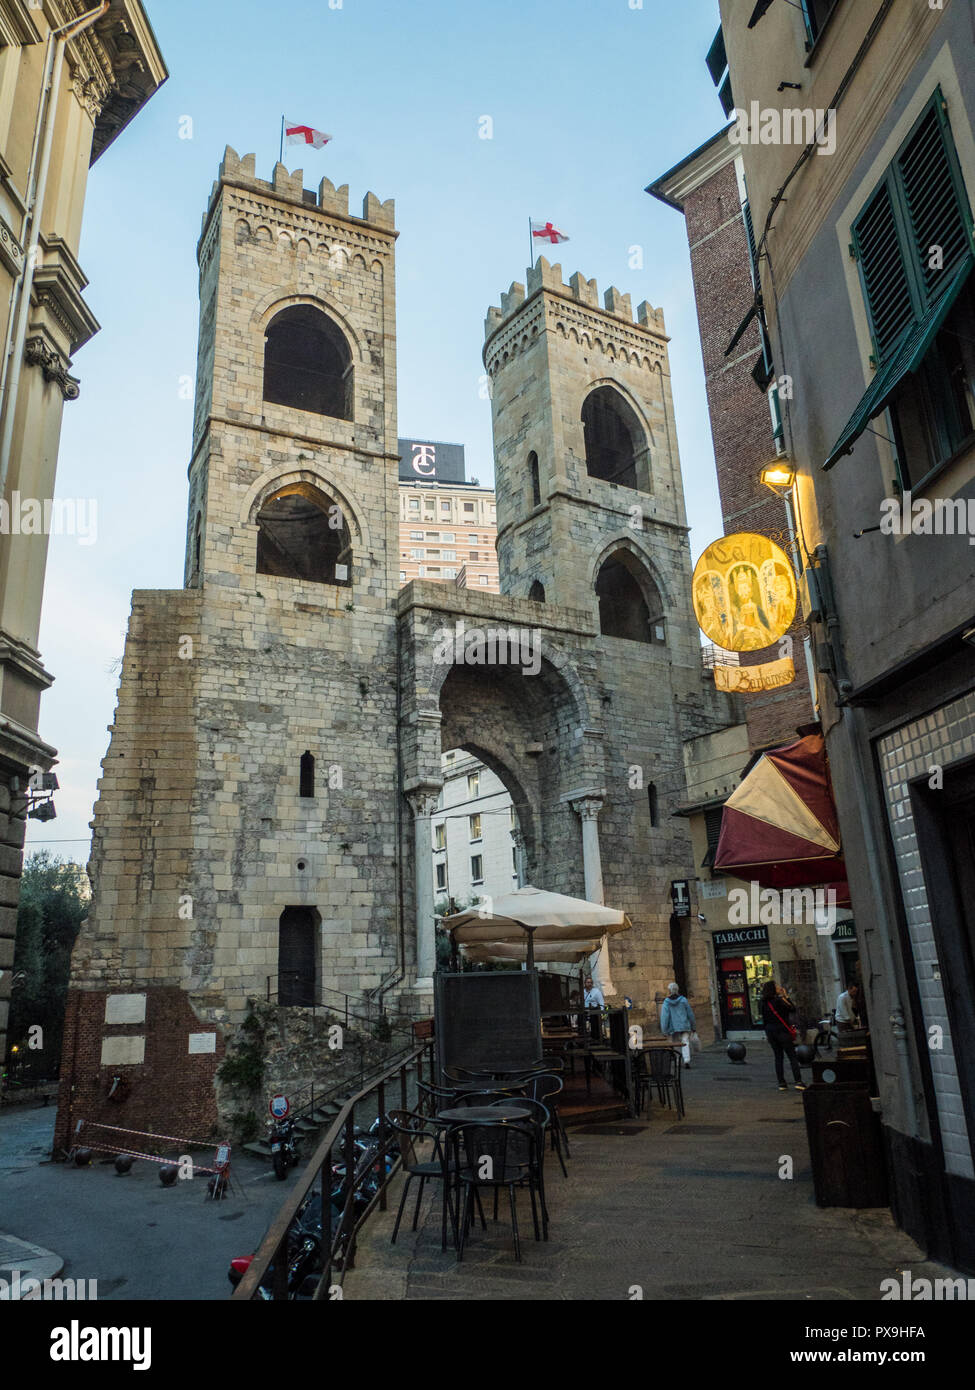 Medieval city gate 'Porta Soprana', Genoa, Liguria, Italy. Stock Photo